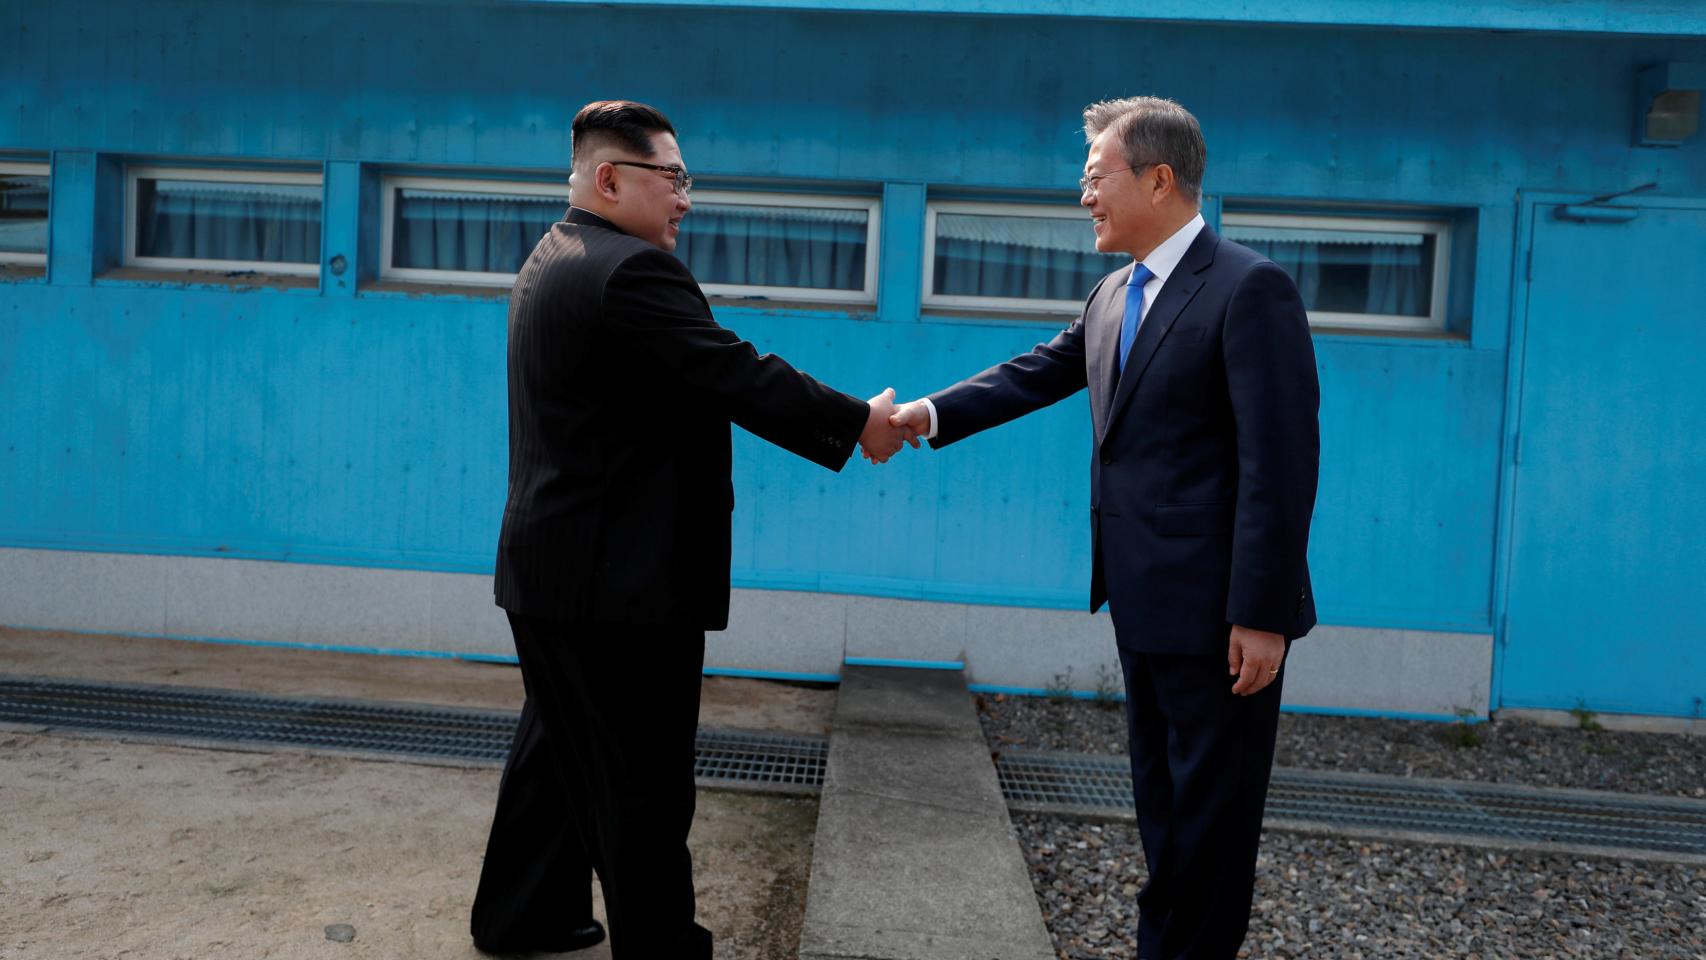 El encuentro histórico entre las dos Coreas, en imágenes